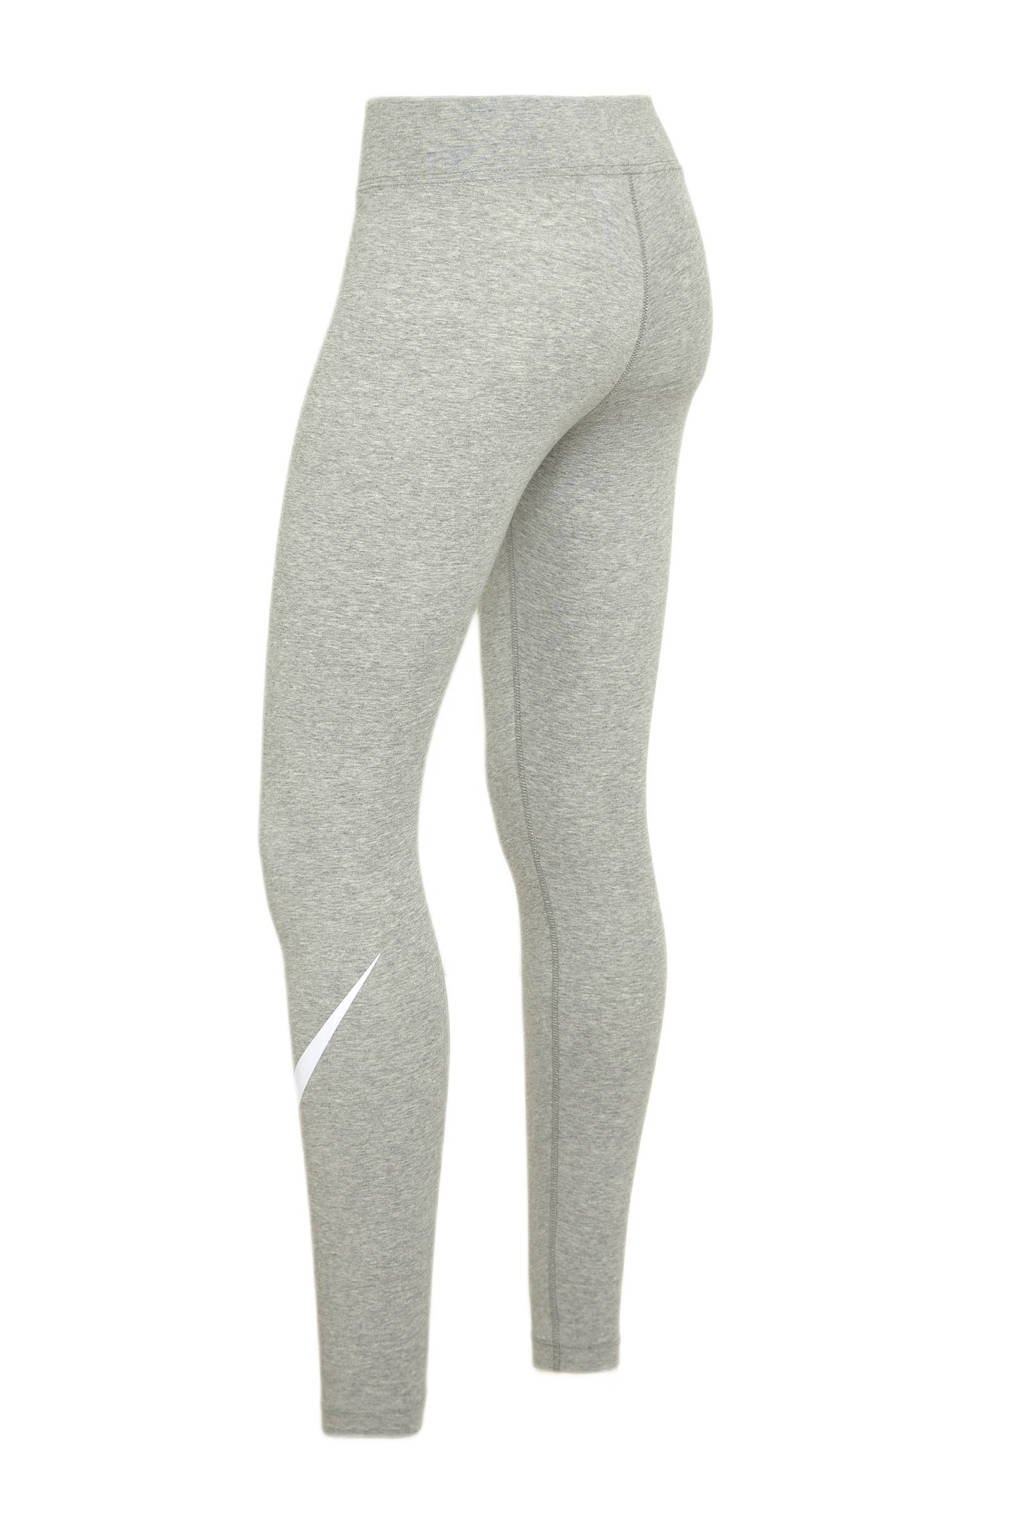 Grijs en witte dames Nike legging melange van katoen met skinny fit, regular waist, elastische tailleband en logo dessin